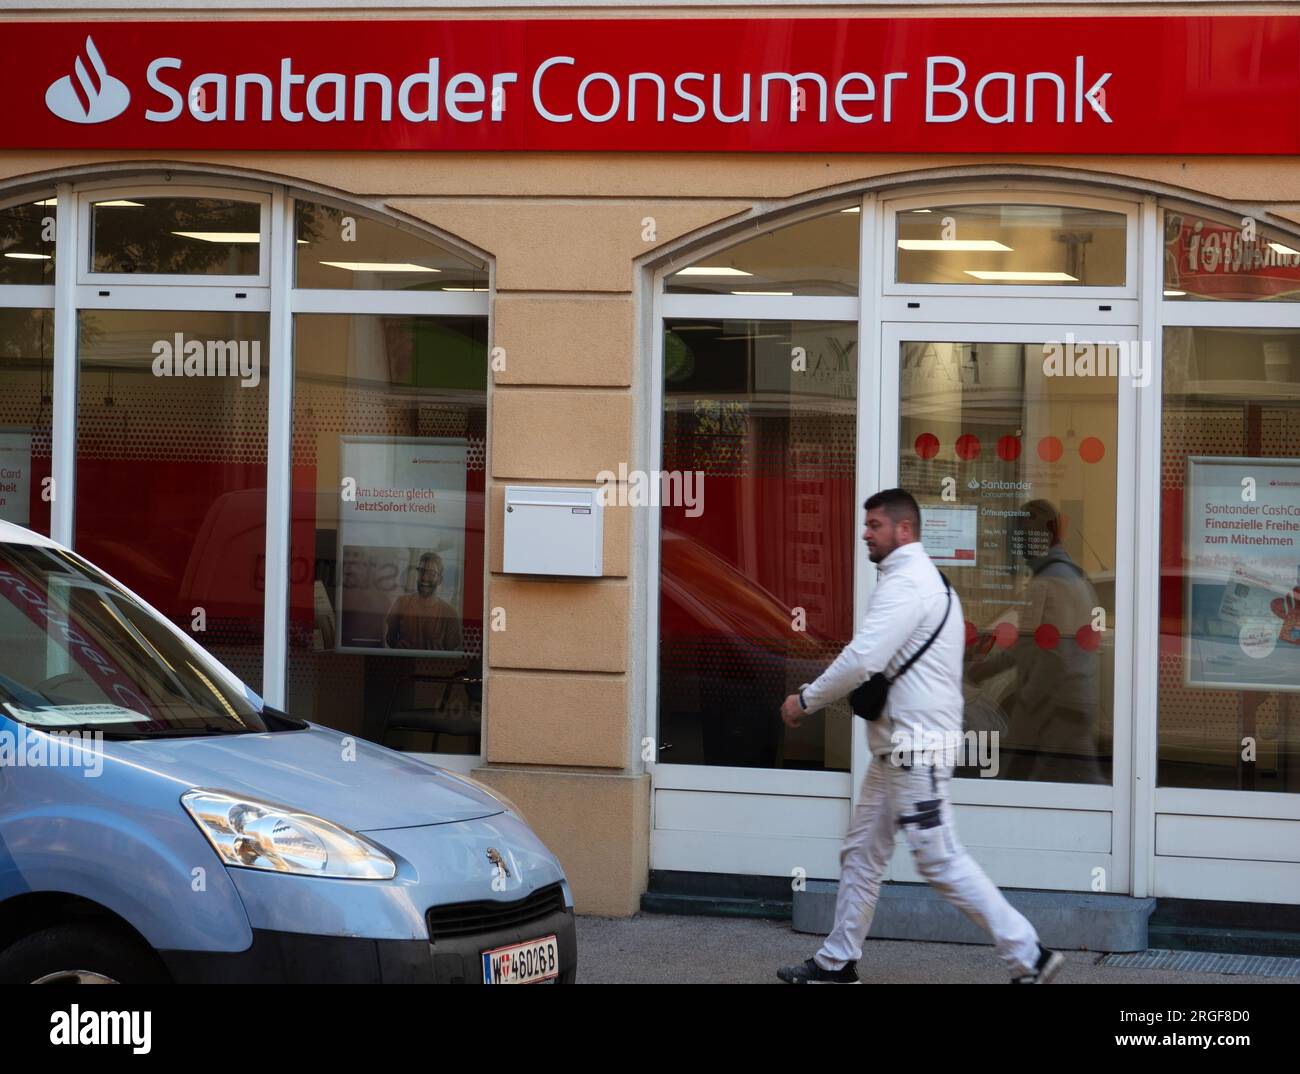 Branch of Santander Consumer Bank, Baden, Austria Stock Photo